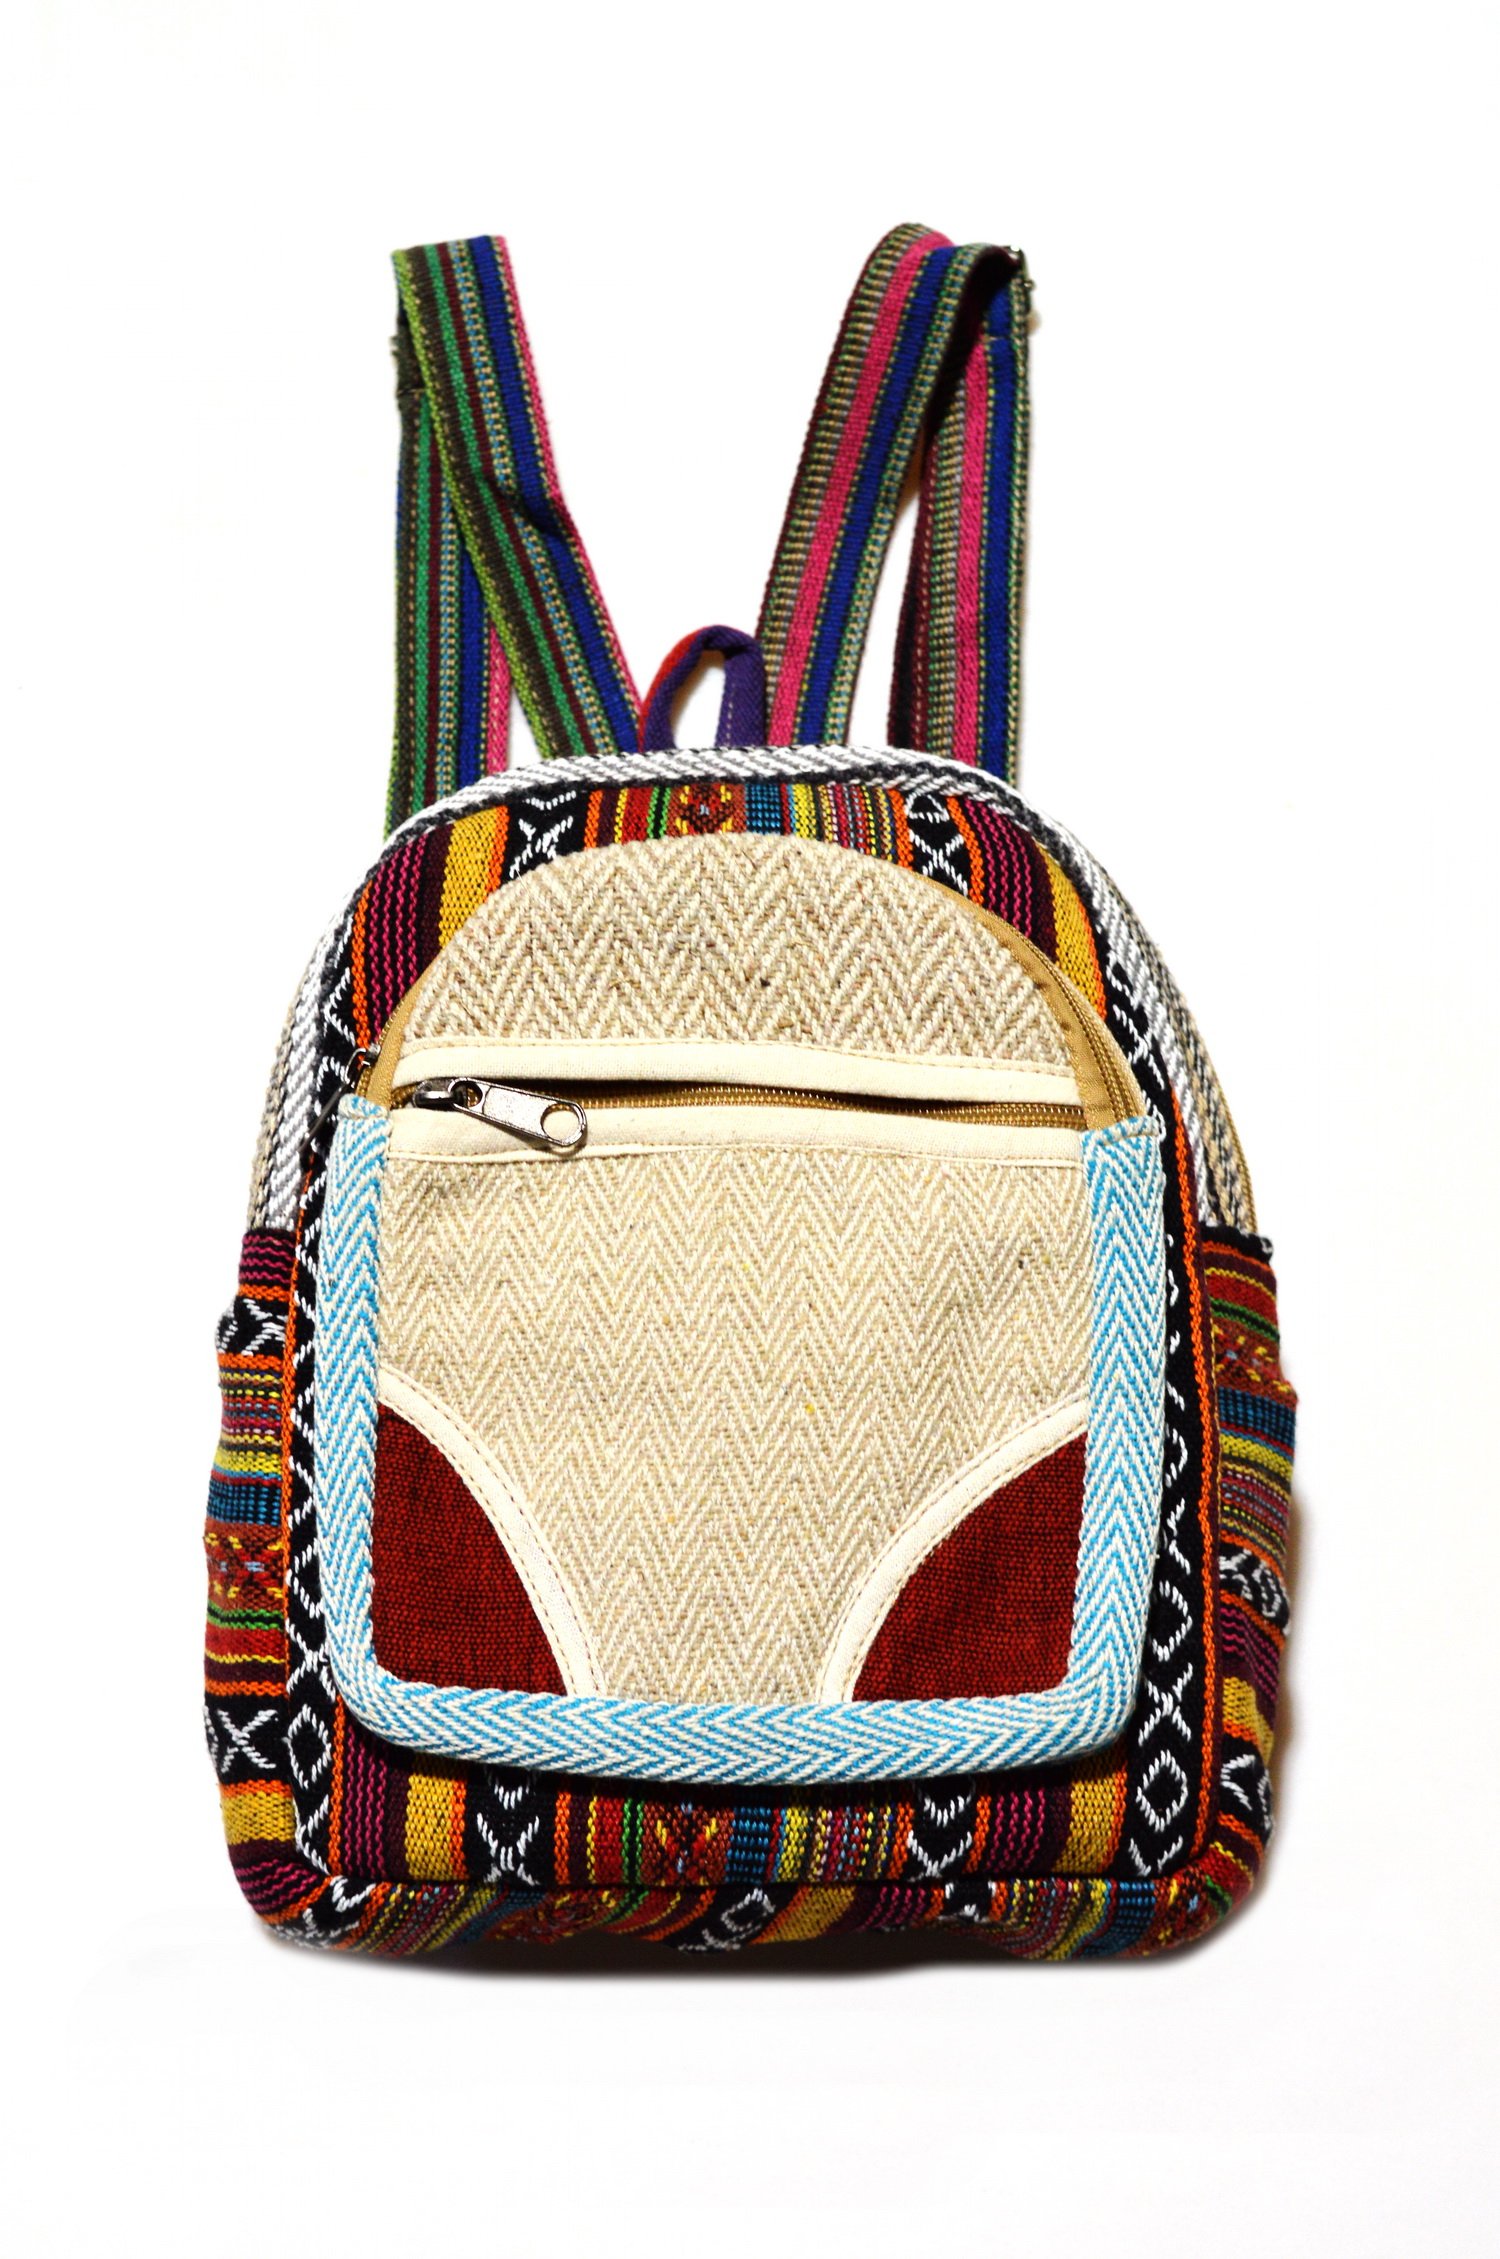 Рюкзак коричнево-бежевый, полосы с крестиками-ноликами, 30 x 25 см. 